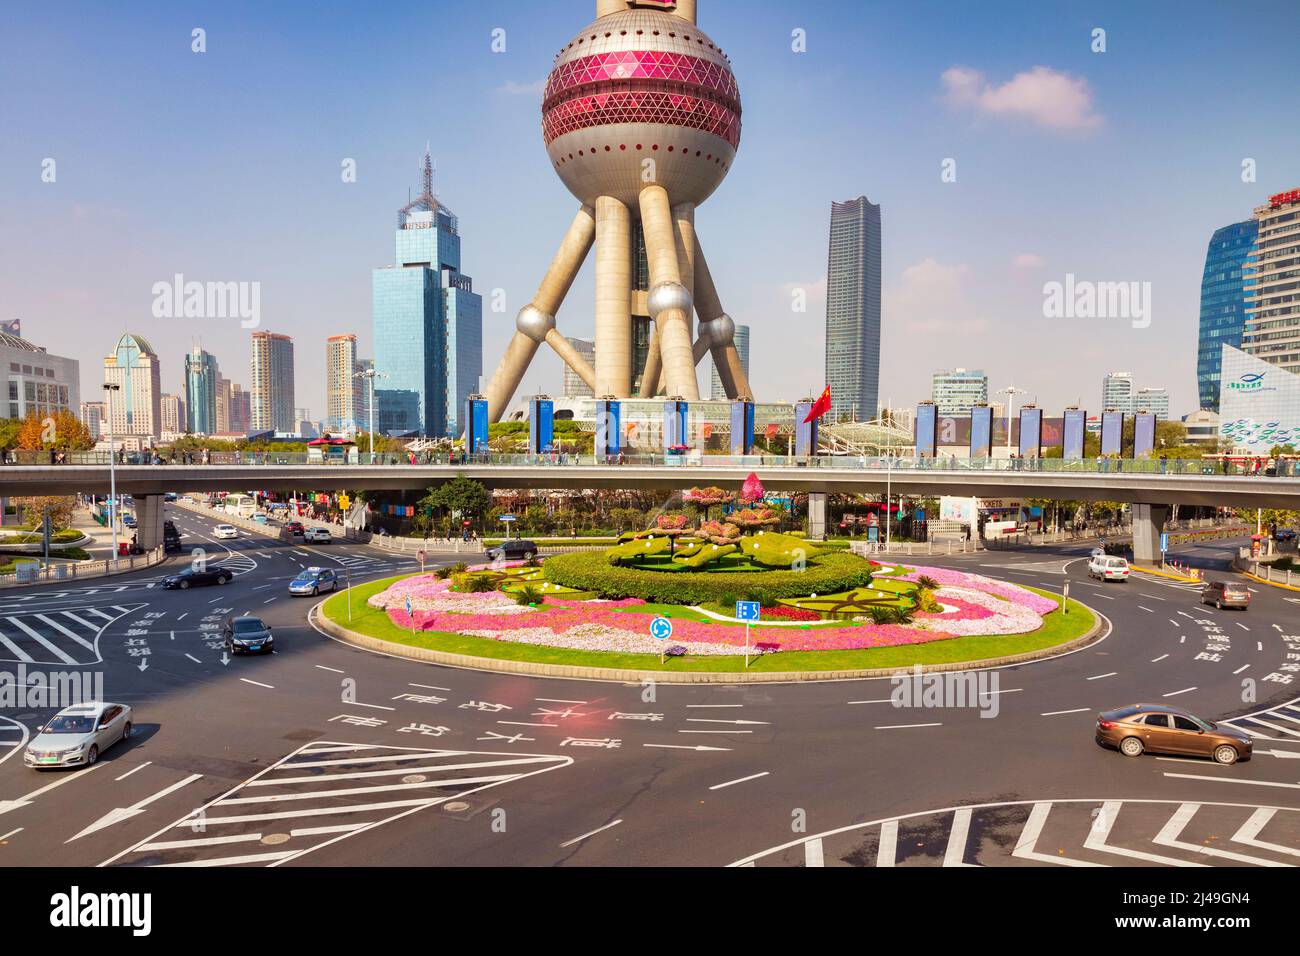 1. Dezember 2018: Shanghai, China - Blick auf den Pudong-Bezirk, mit dem Oriental Pearl Tower und einem großen Kreisverkehr mit Topiary in der Mitte. Stockfoto